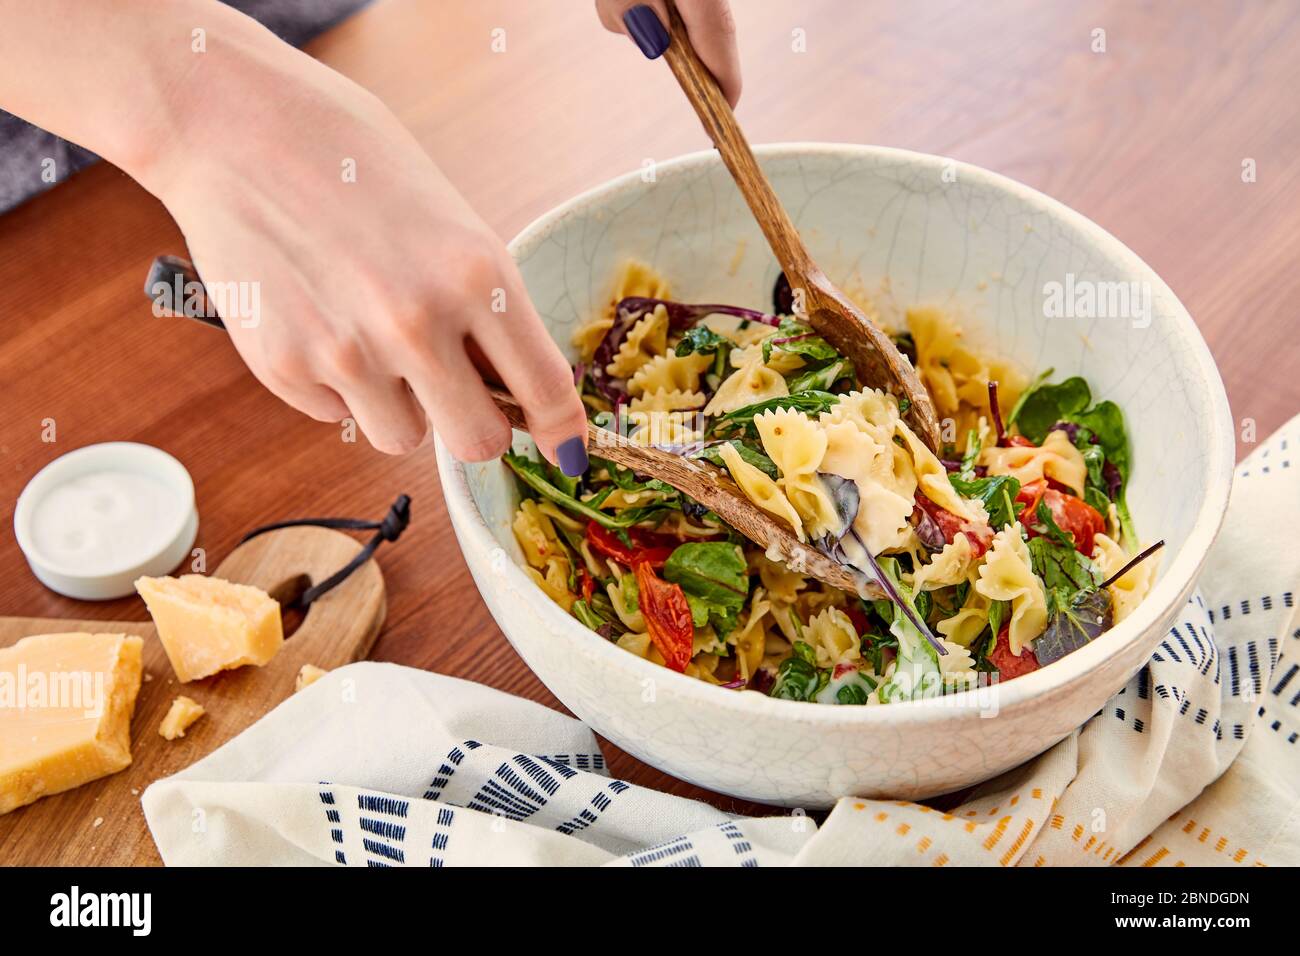 Vue partielle de la femme mélangeant la salade de pâtes dans un bol avec des spatules près de la serviette, du sel et de la planche à découper avec du parmesan près de la table dans la cuisine Banque D'Images